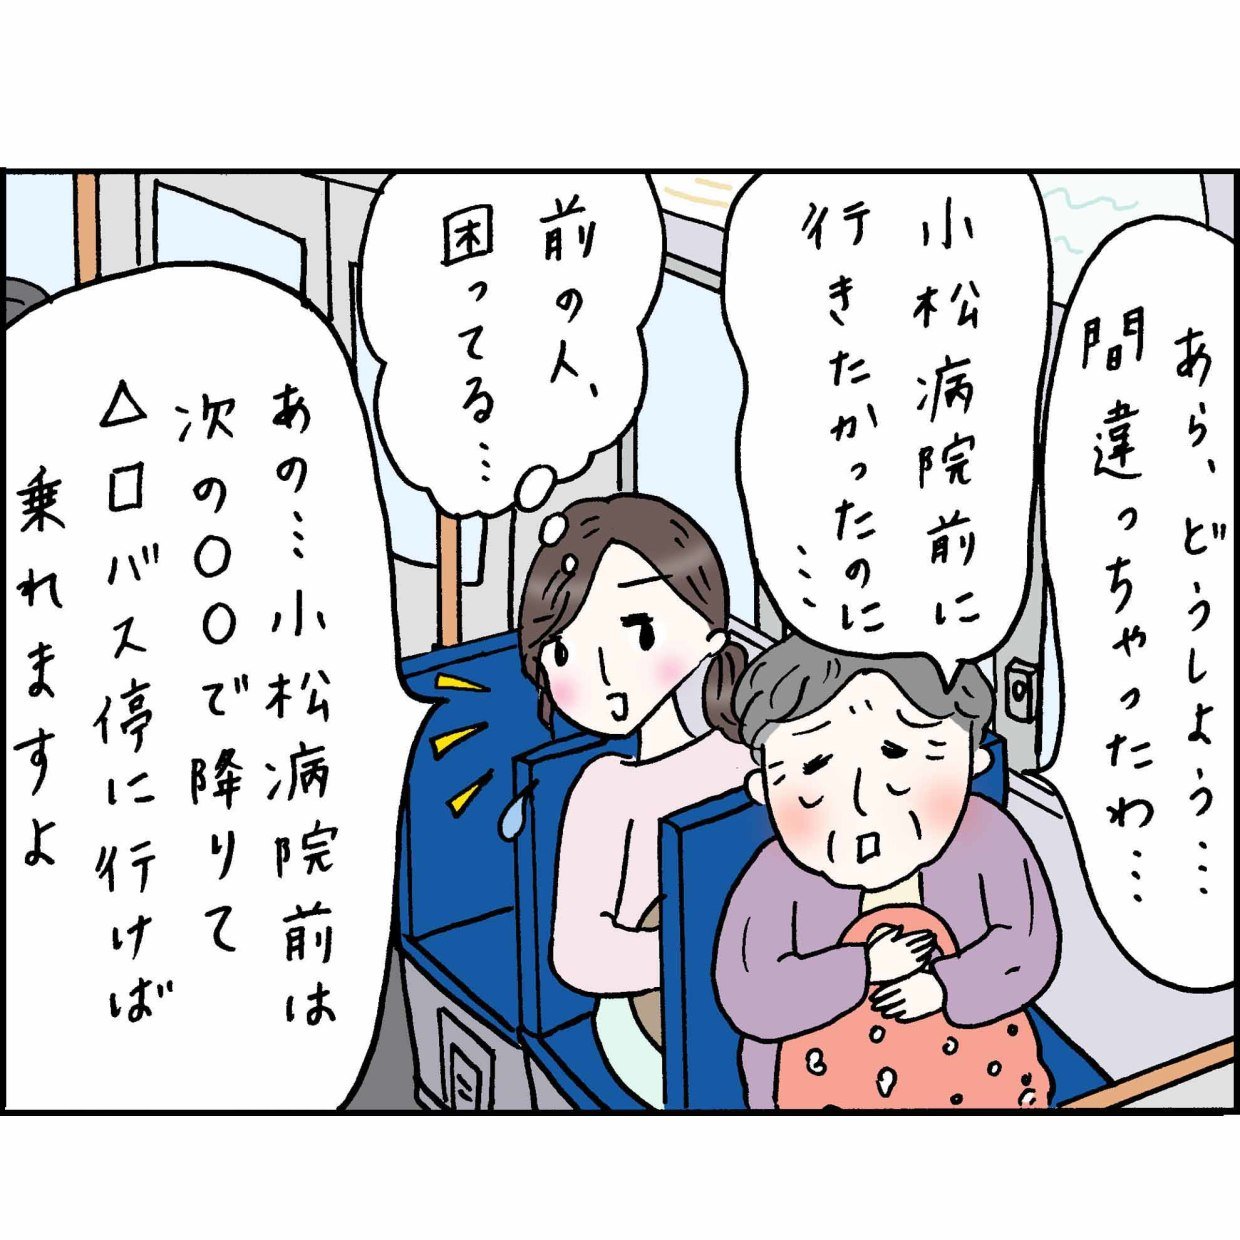 バスの中で困っているおばあちゃんを助けて私が幸せになった話 #4コマ漫画